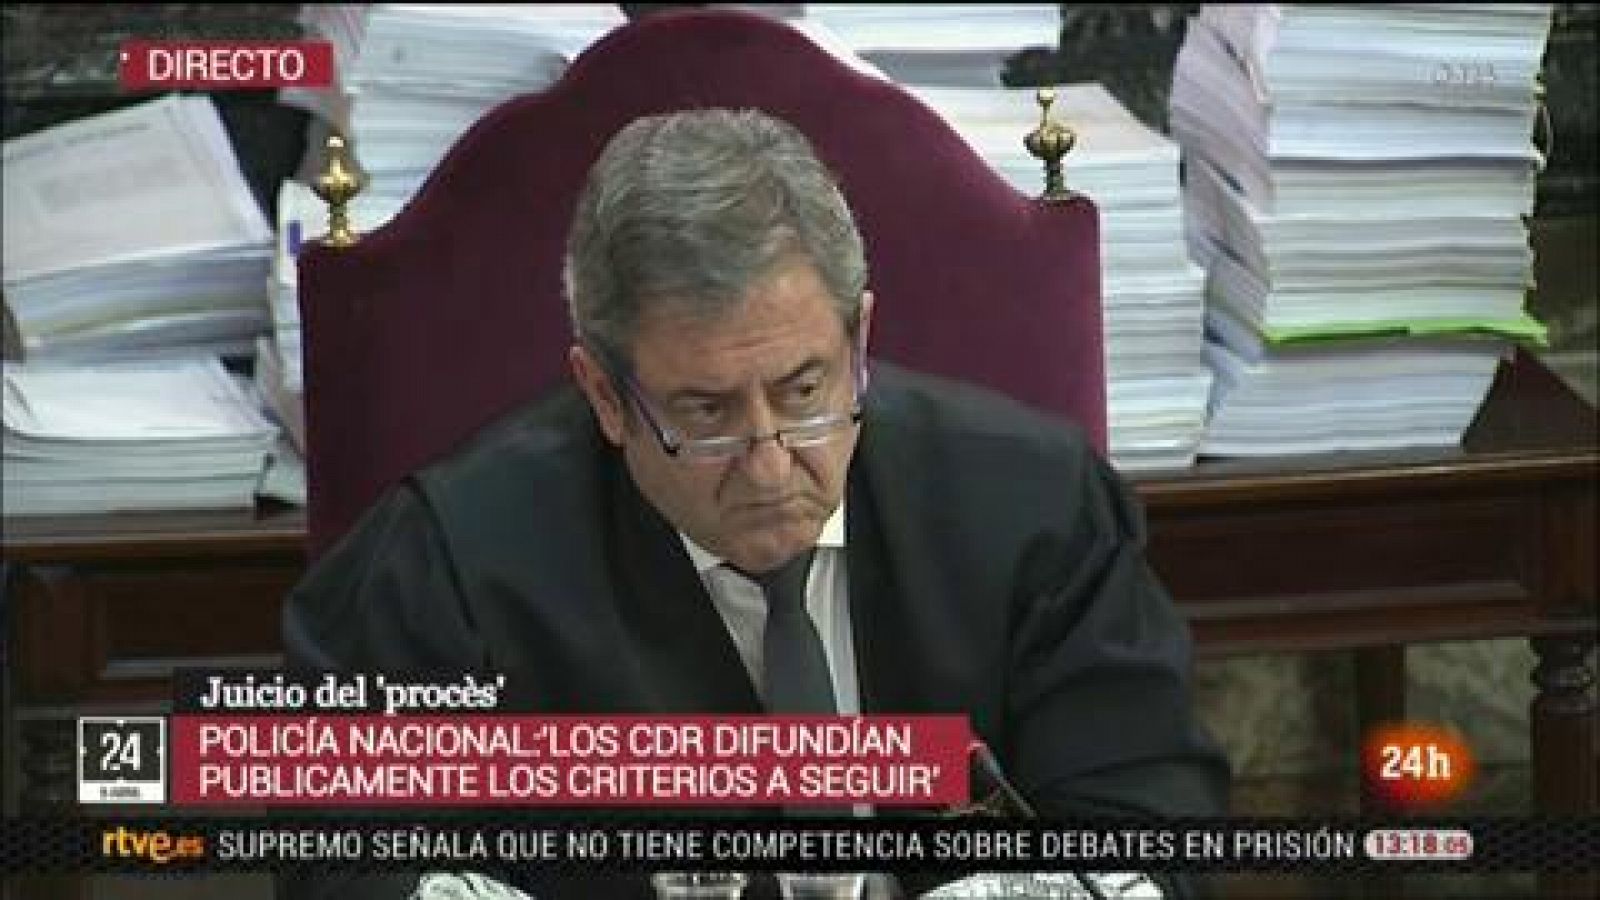 Juicio procés: Un comisario de Información del 1-O asegura que los CDR "organizaron muy bien el referéndum"